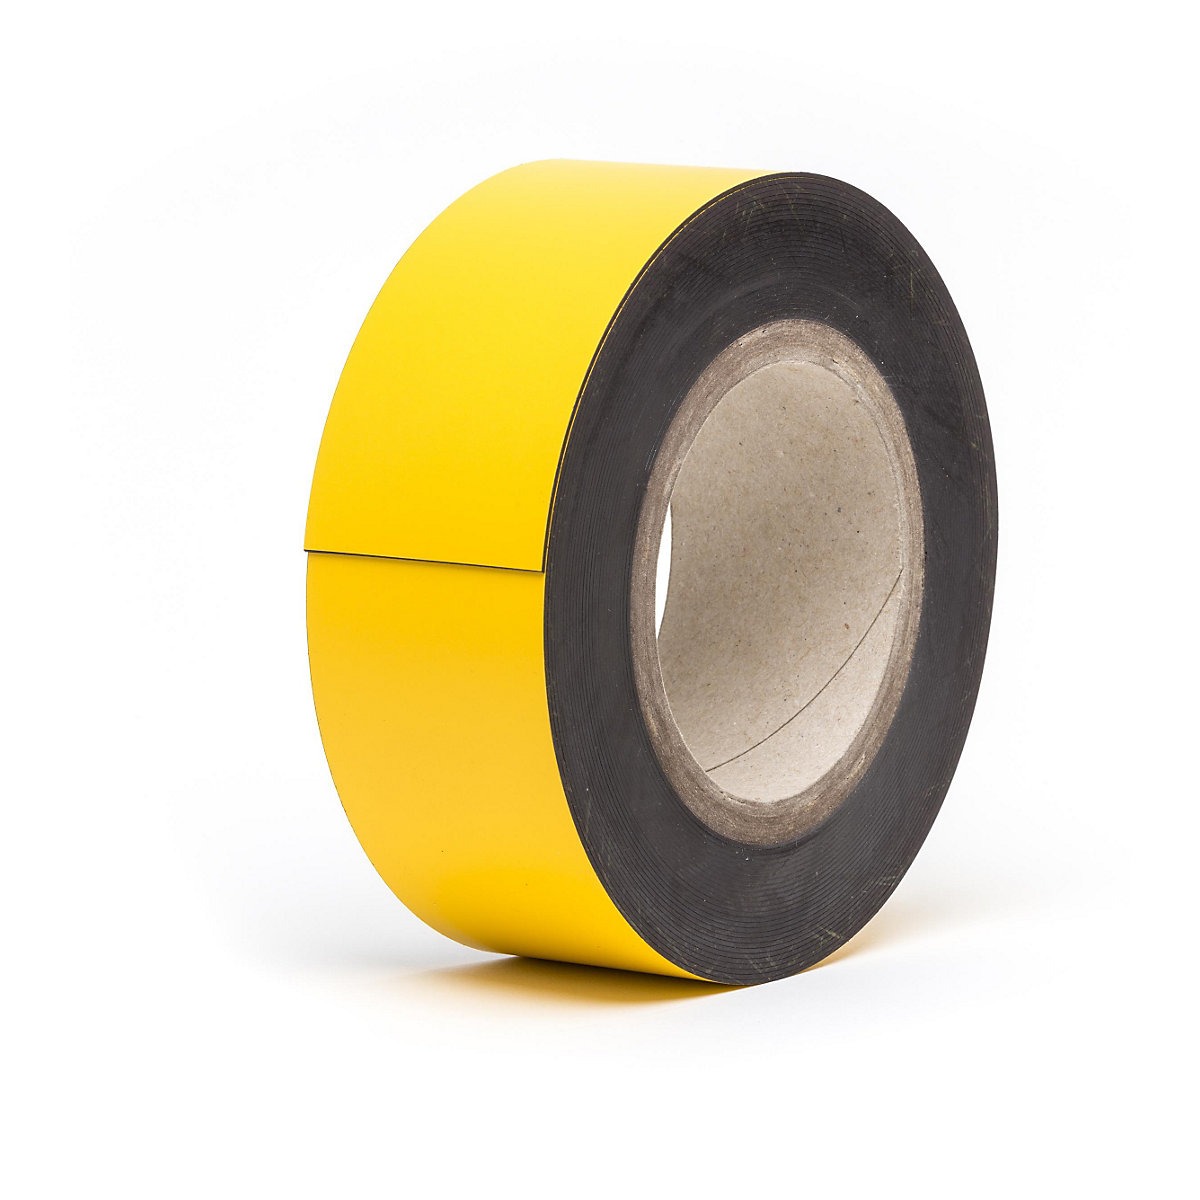 Magnetne skladišne pločice, u roli, u žutoj boji, visina 50 mm, dužina role 10 m-9